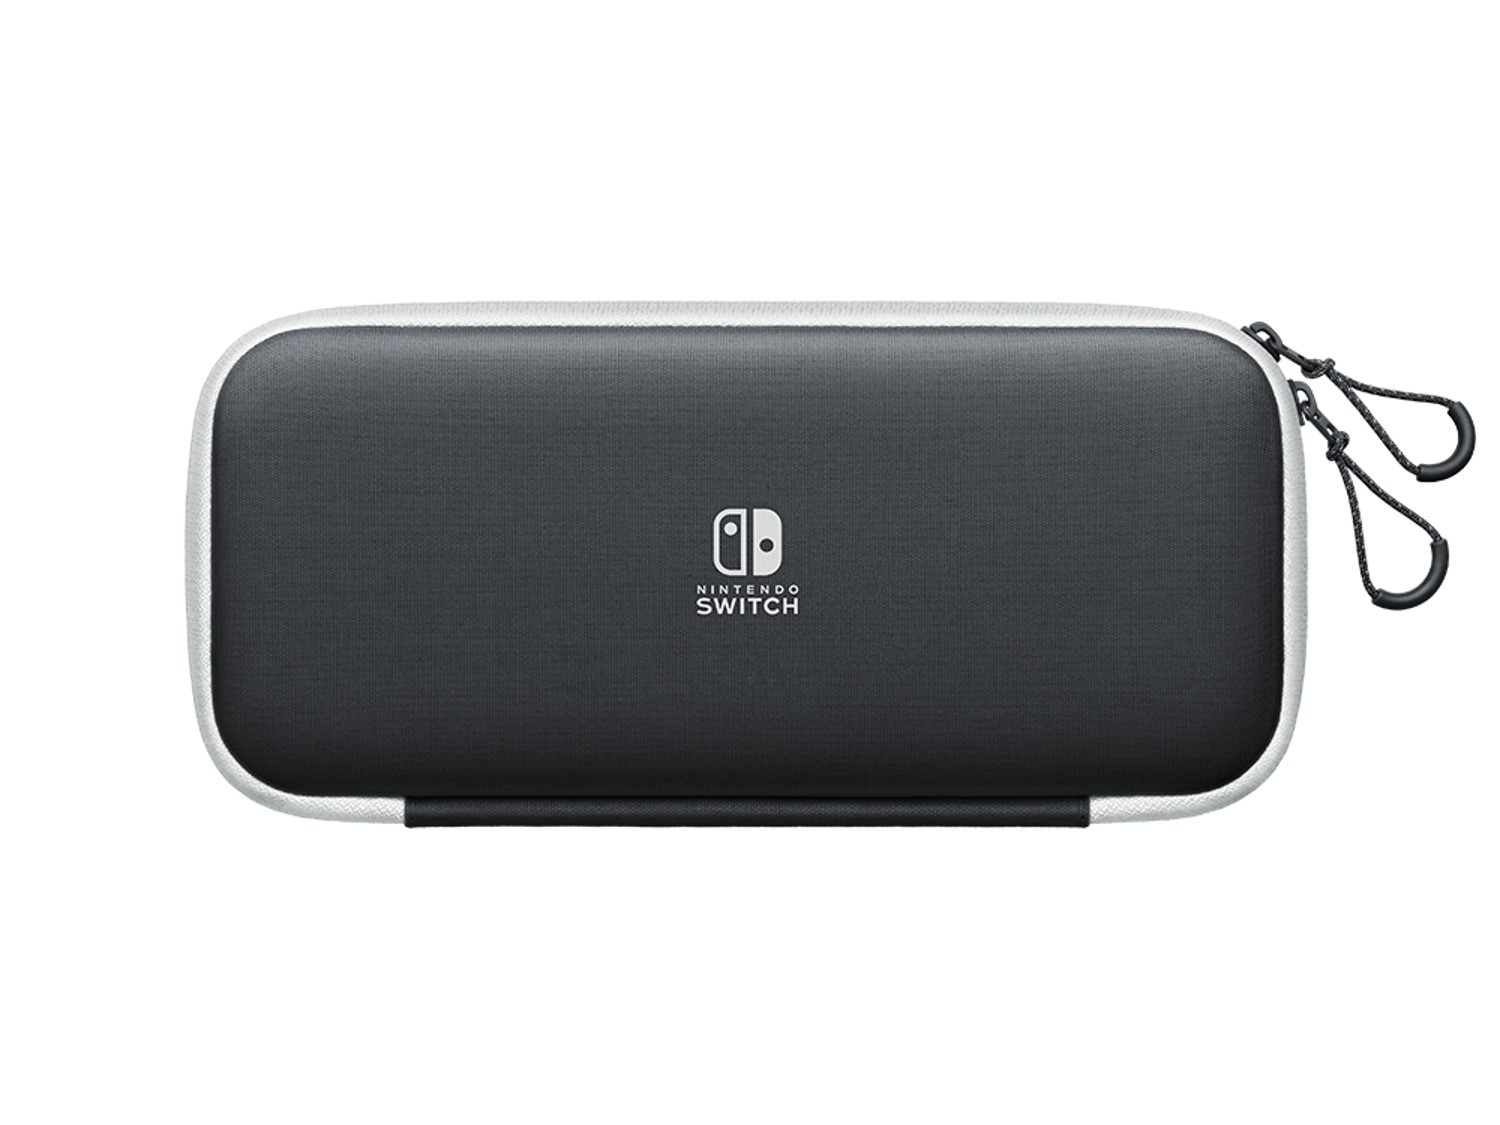 Nintendo Switch OLED Carrying Case - White/Black - Nintendo Switch Hardware